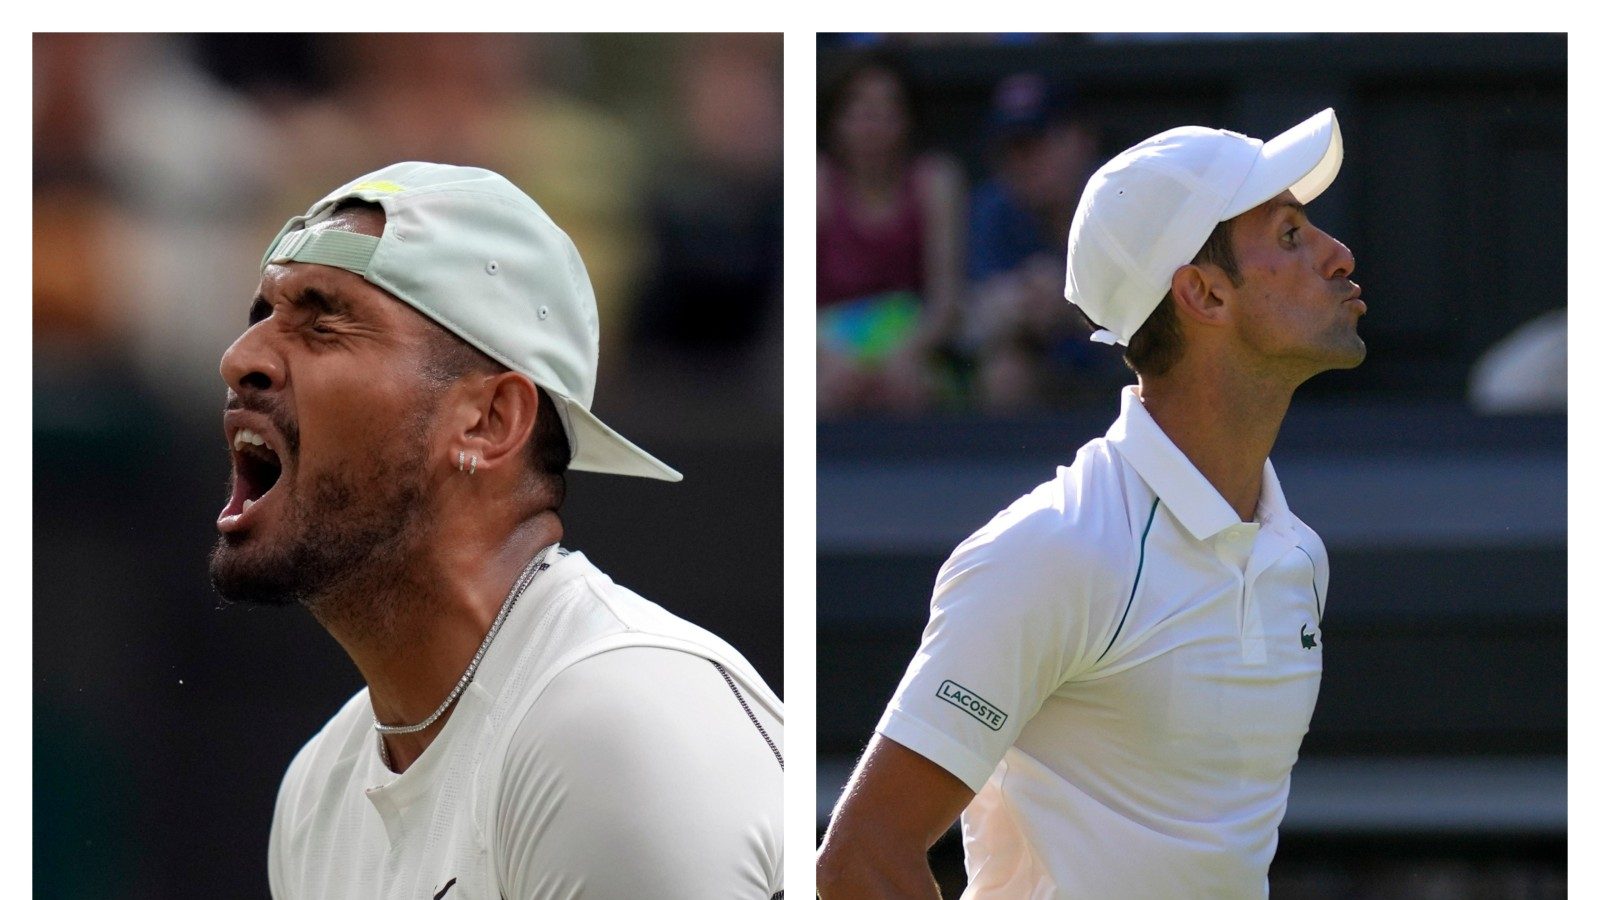 Wimbledon 2022 Date With Destiny as Nick Kyrgios Faces Novak Djokovic in Final